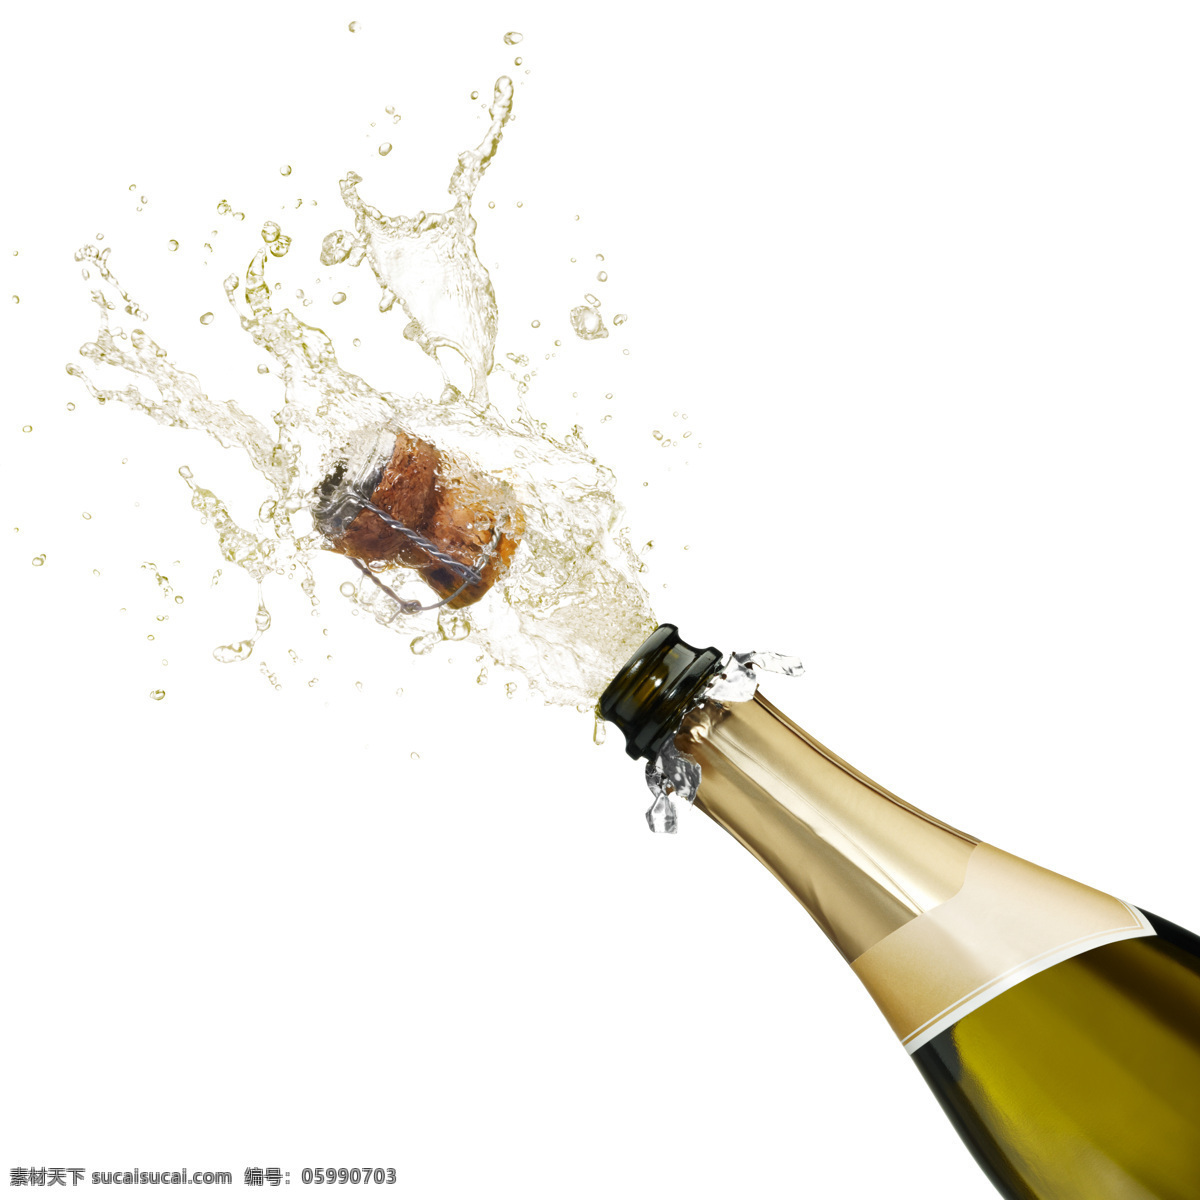 开 香槟 庆祝 香槟酒 美酒 酒瓶 开酒庆祝 新年快乐 酒类图片 餐饮美食